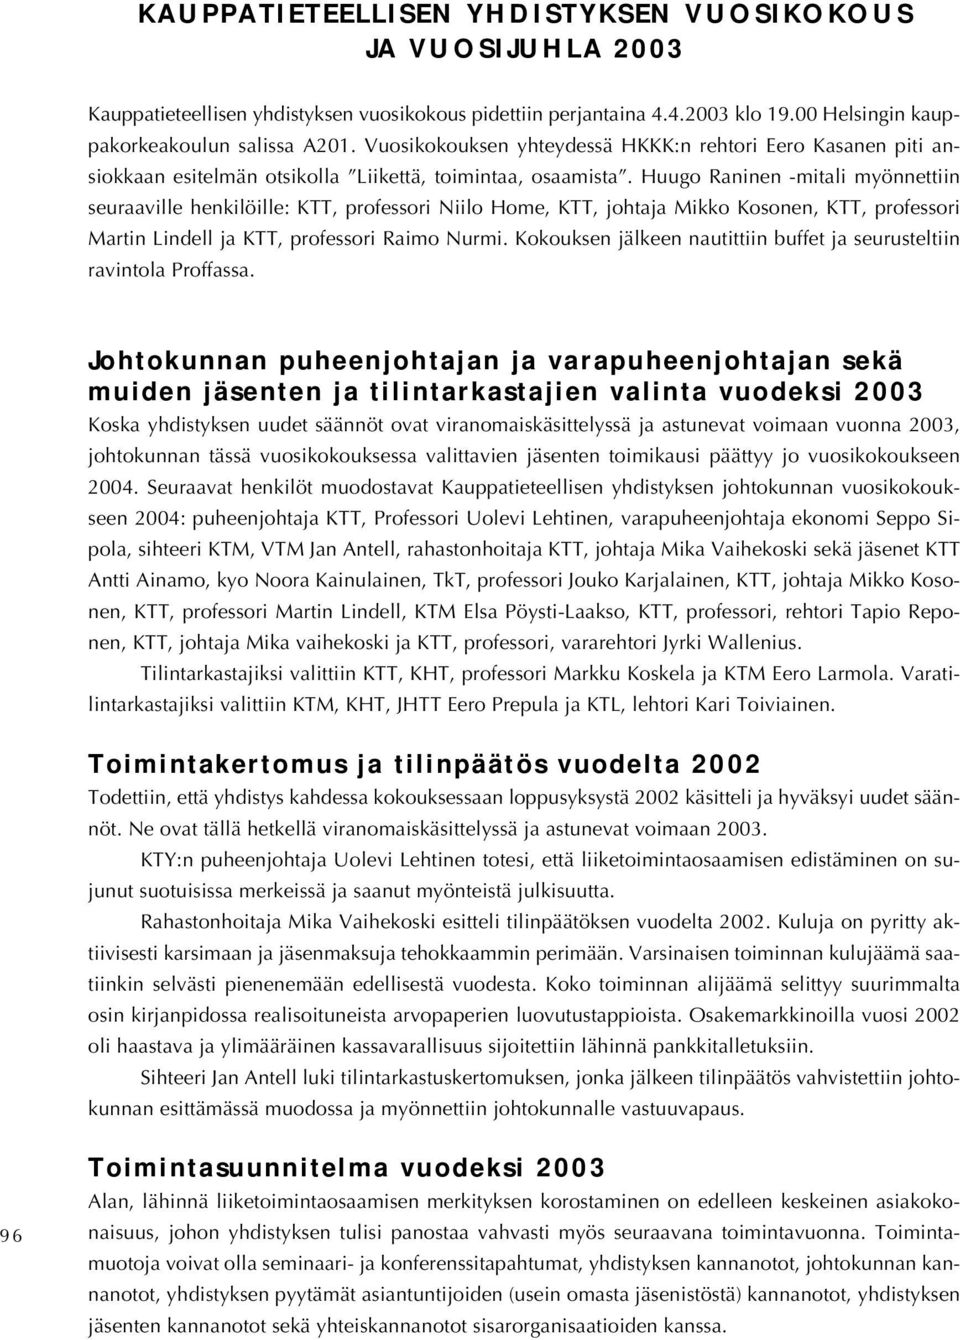 Huugo Raninen -mitali myönnettiin seuraaville henkilöille: KTT, professori Niilo Home, KTT, johtaja Mikko Kosonen, KTT, professori Martin Lindell ja KTT, professori Raimo Nurmi.